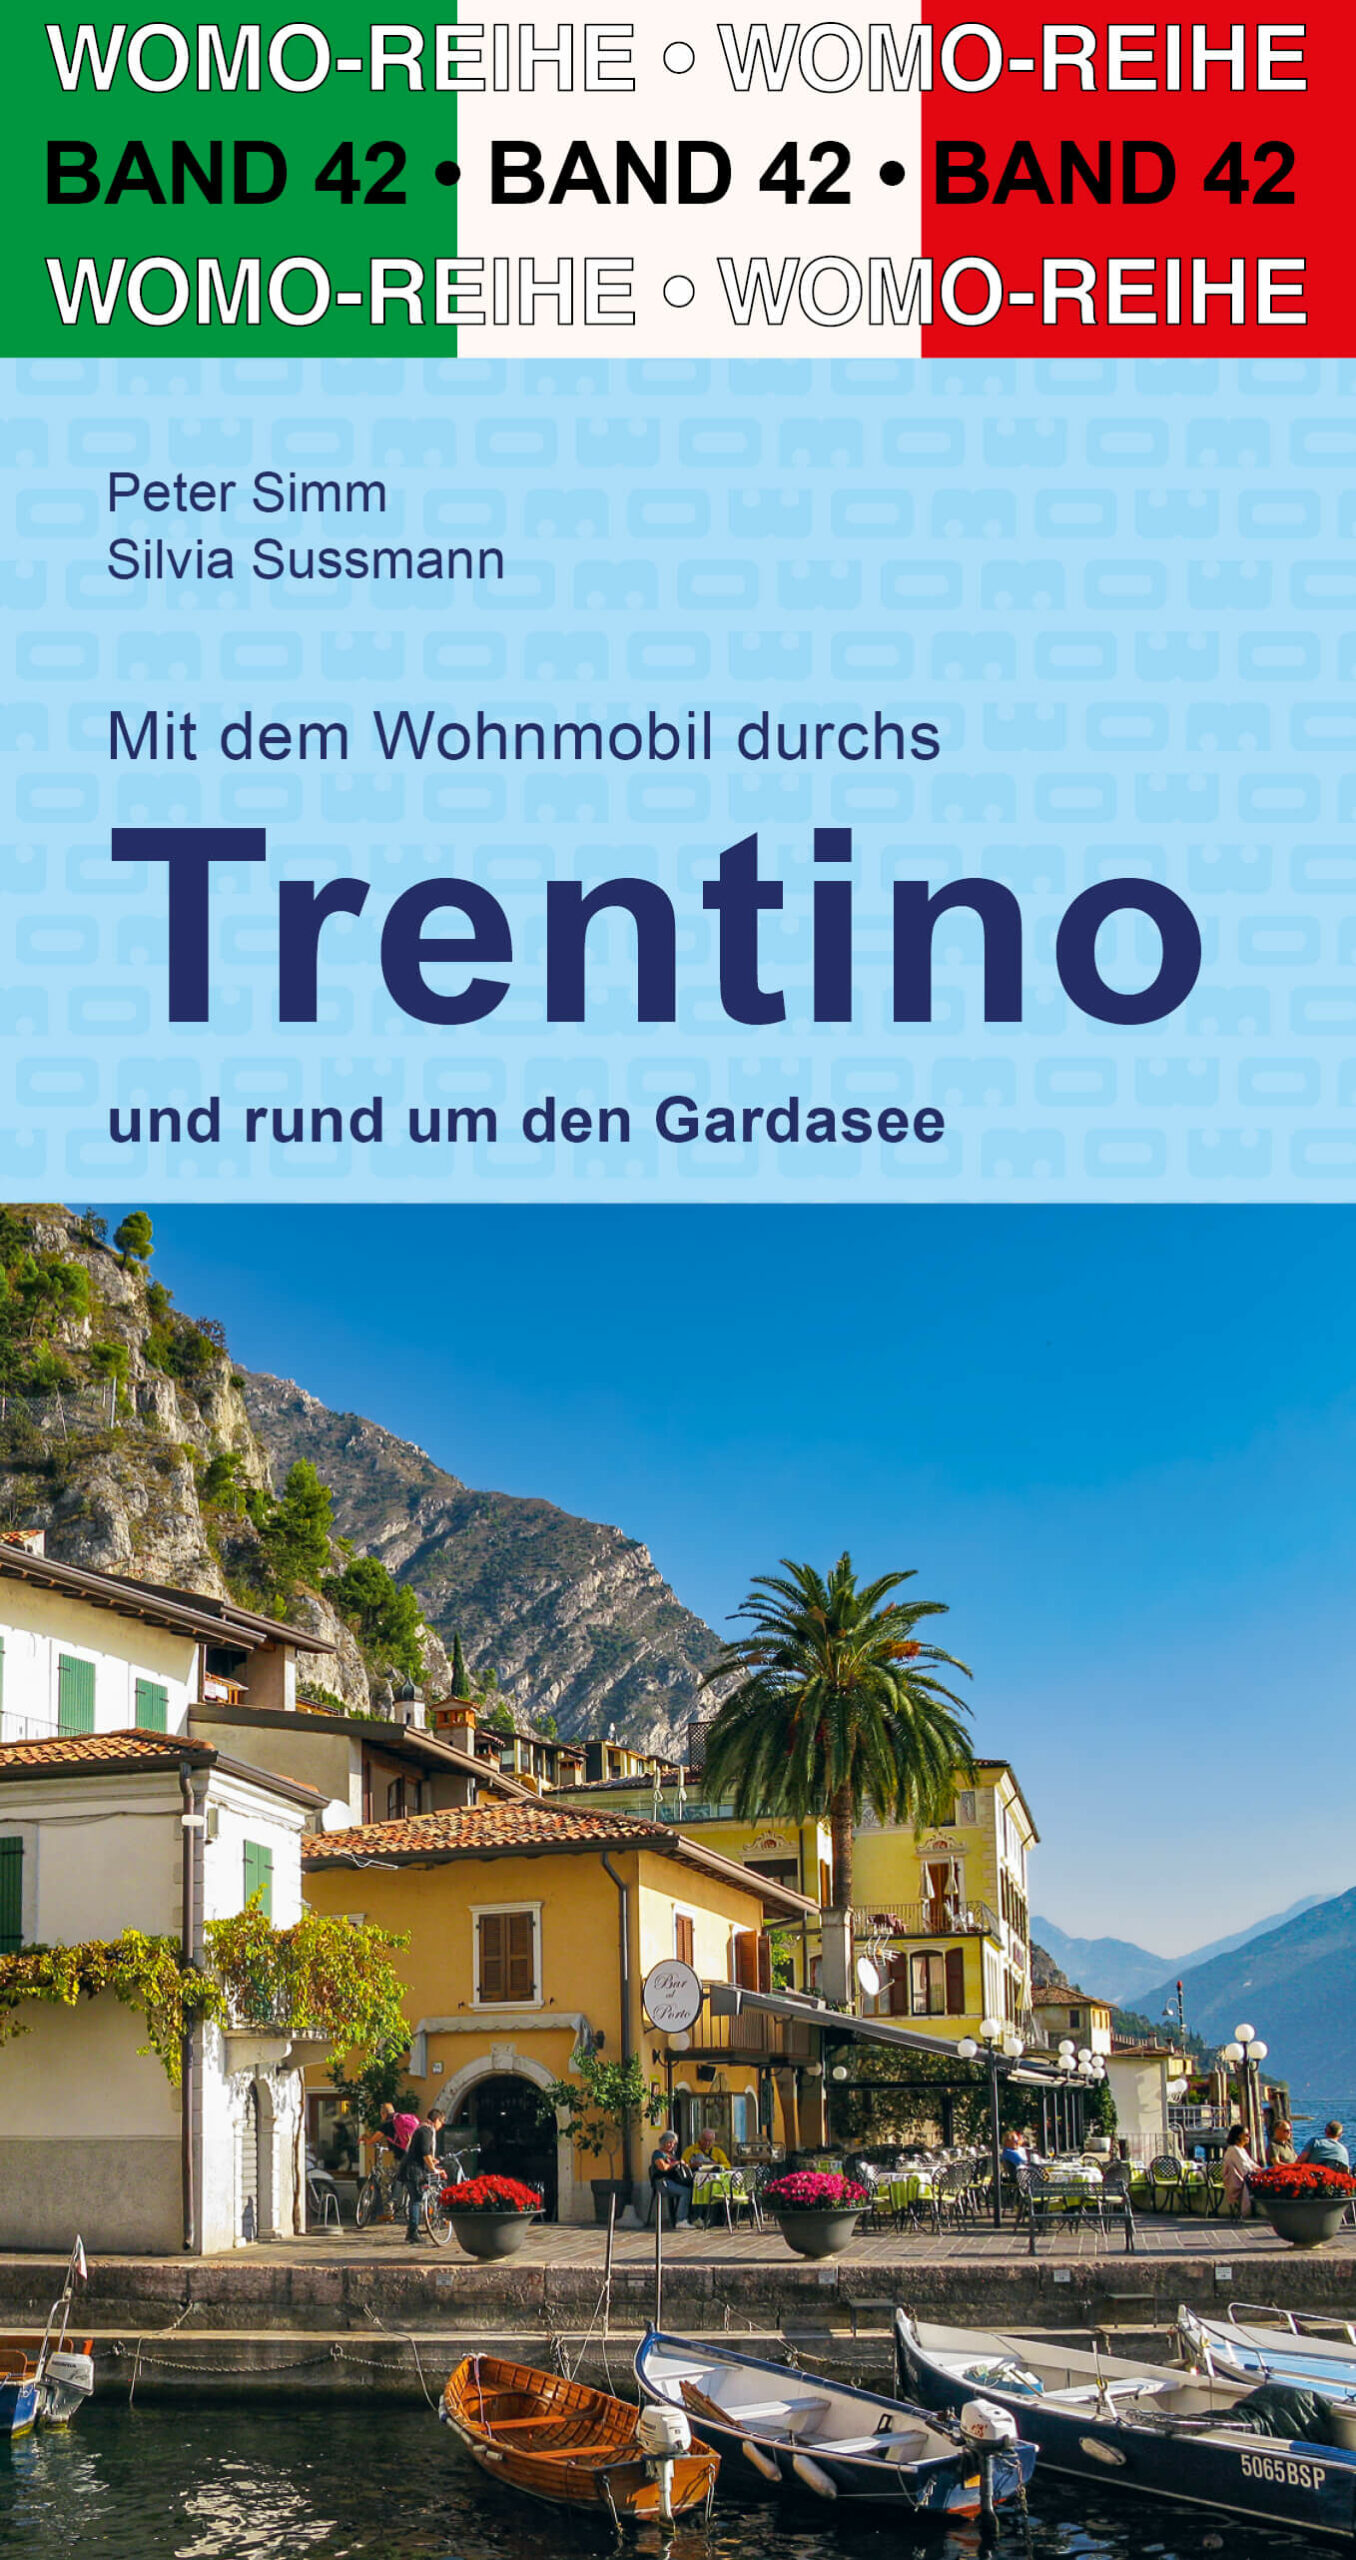 Online bestellen: Opruiming - Campergids Mit dem Wohnmobil durchs Trentino und rund um den Gardasee | WOMO verlag